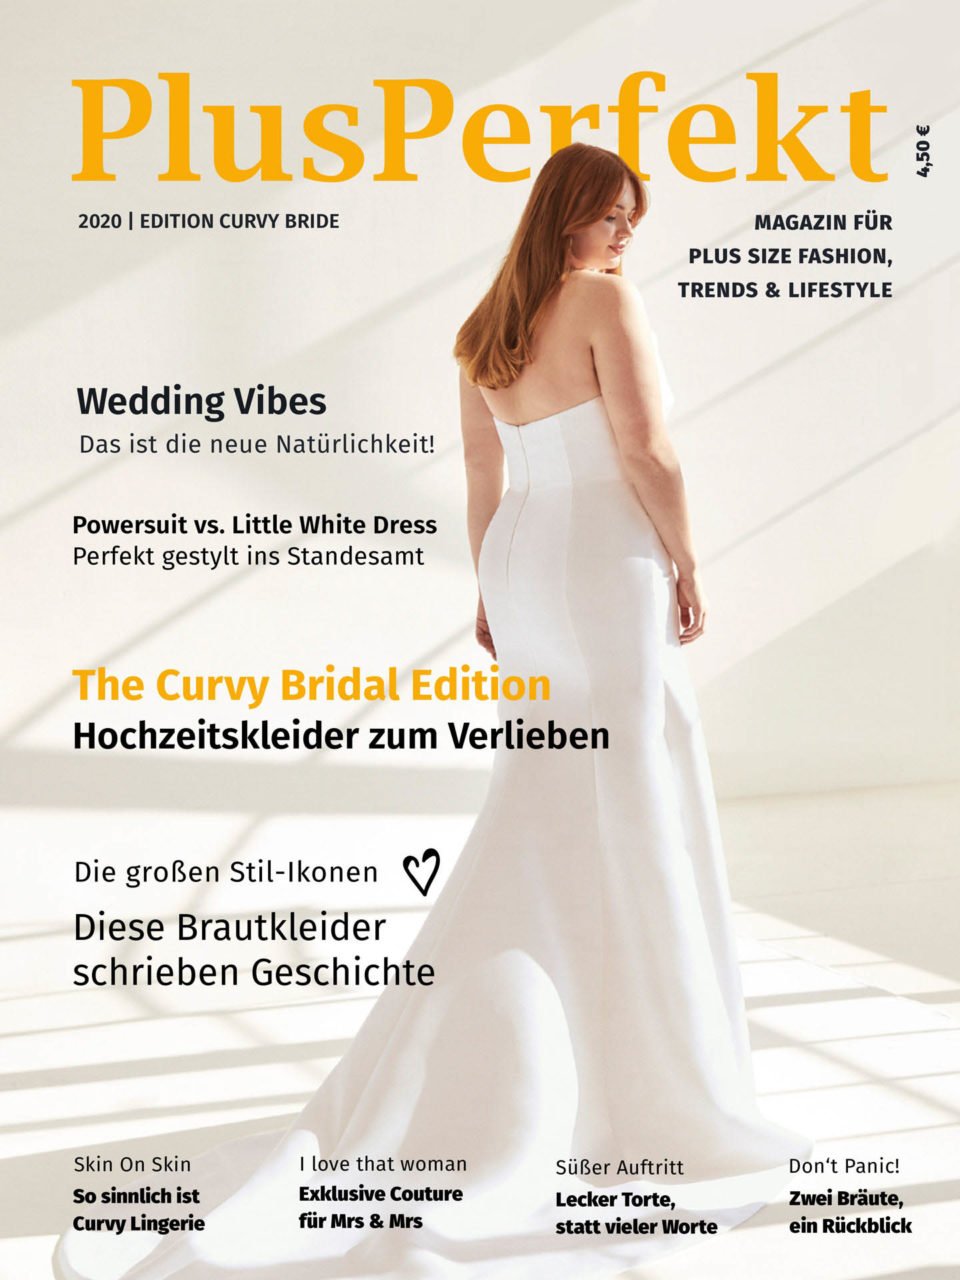 Curvy Bride Edition von PlusPerfekt